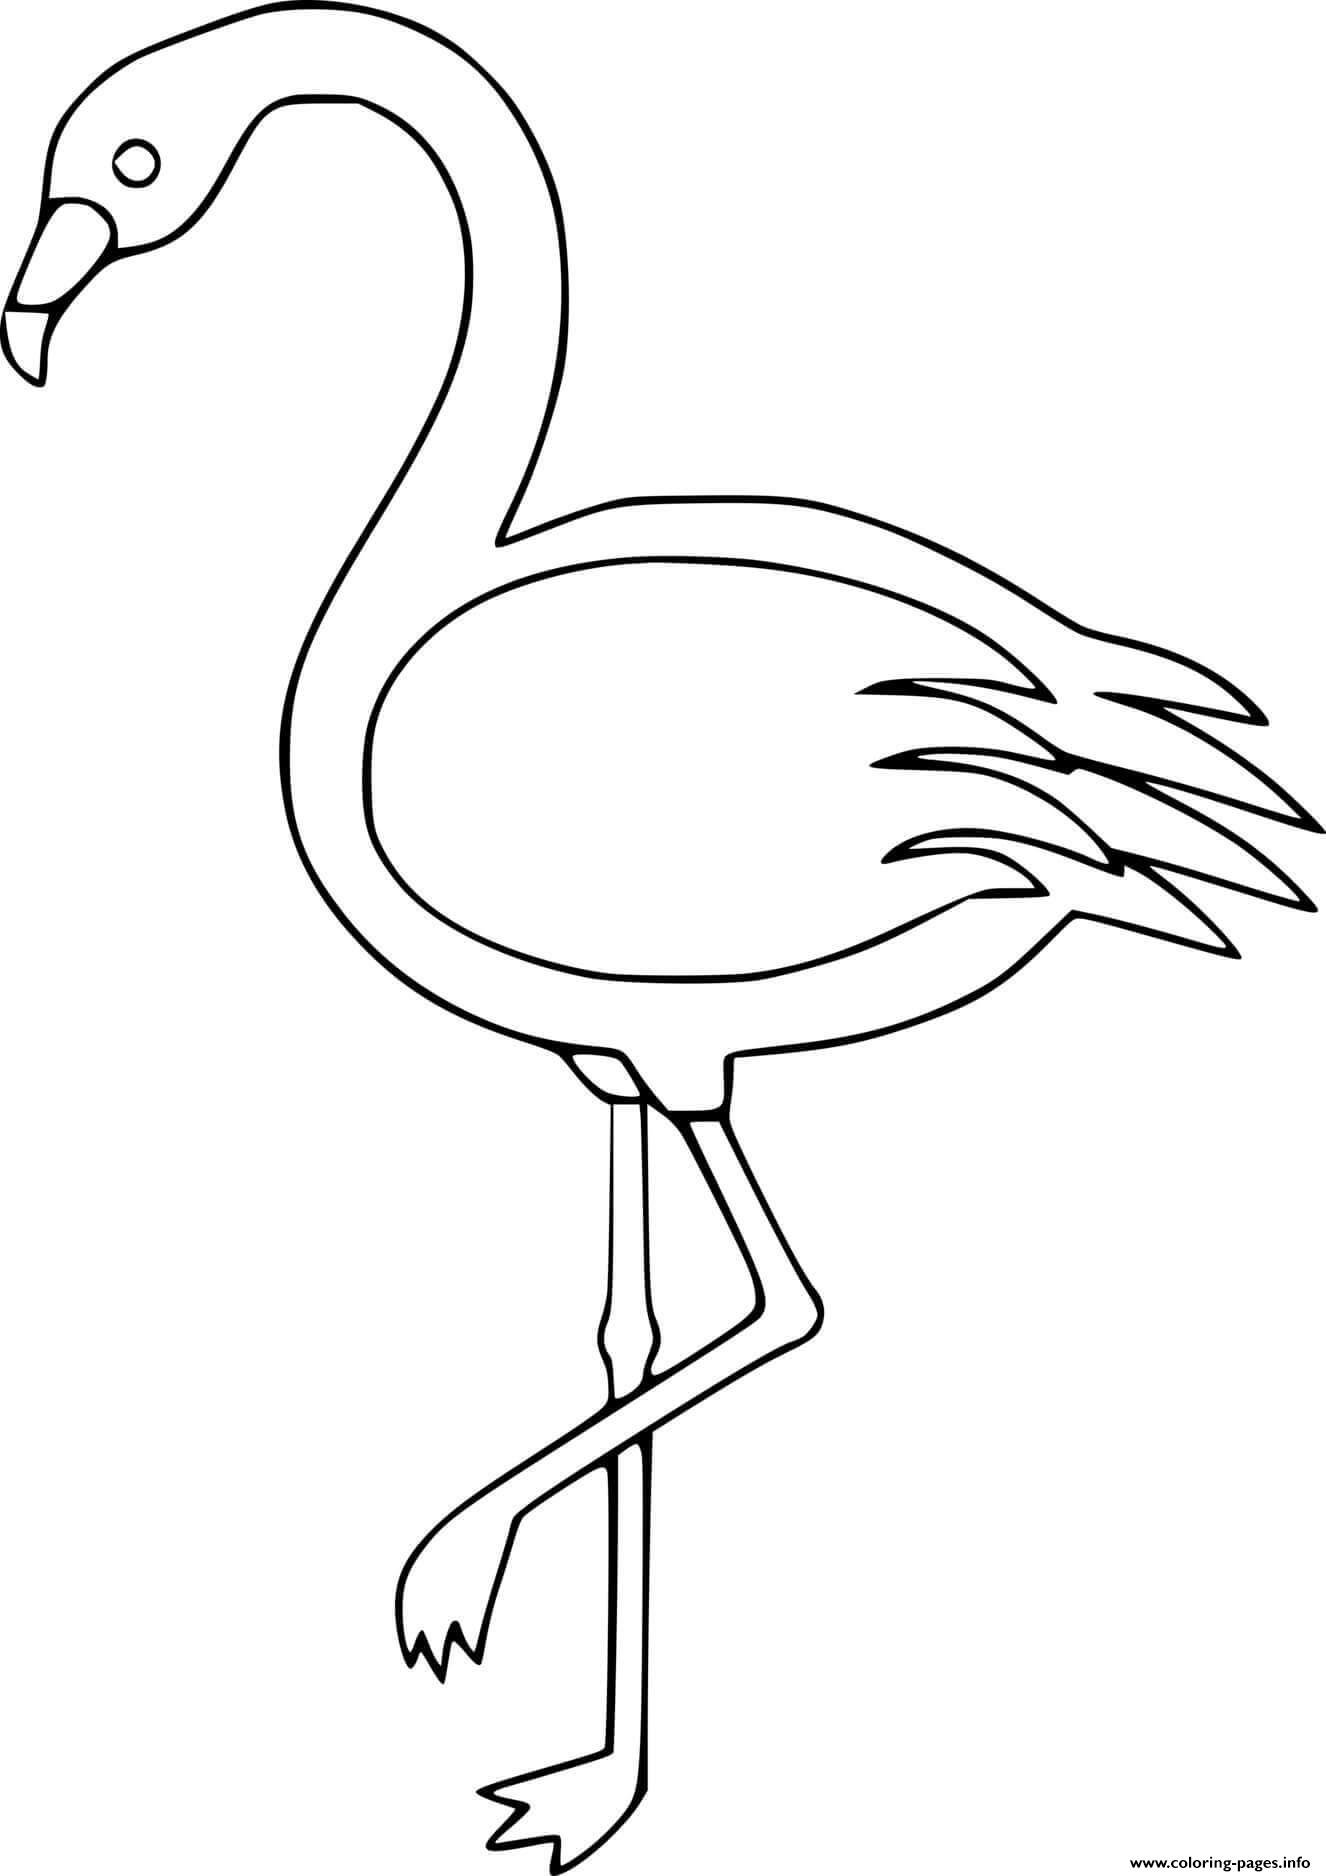 Easy Flamingo coloring